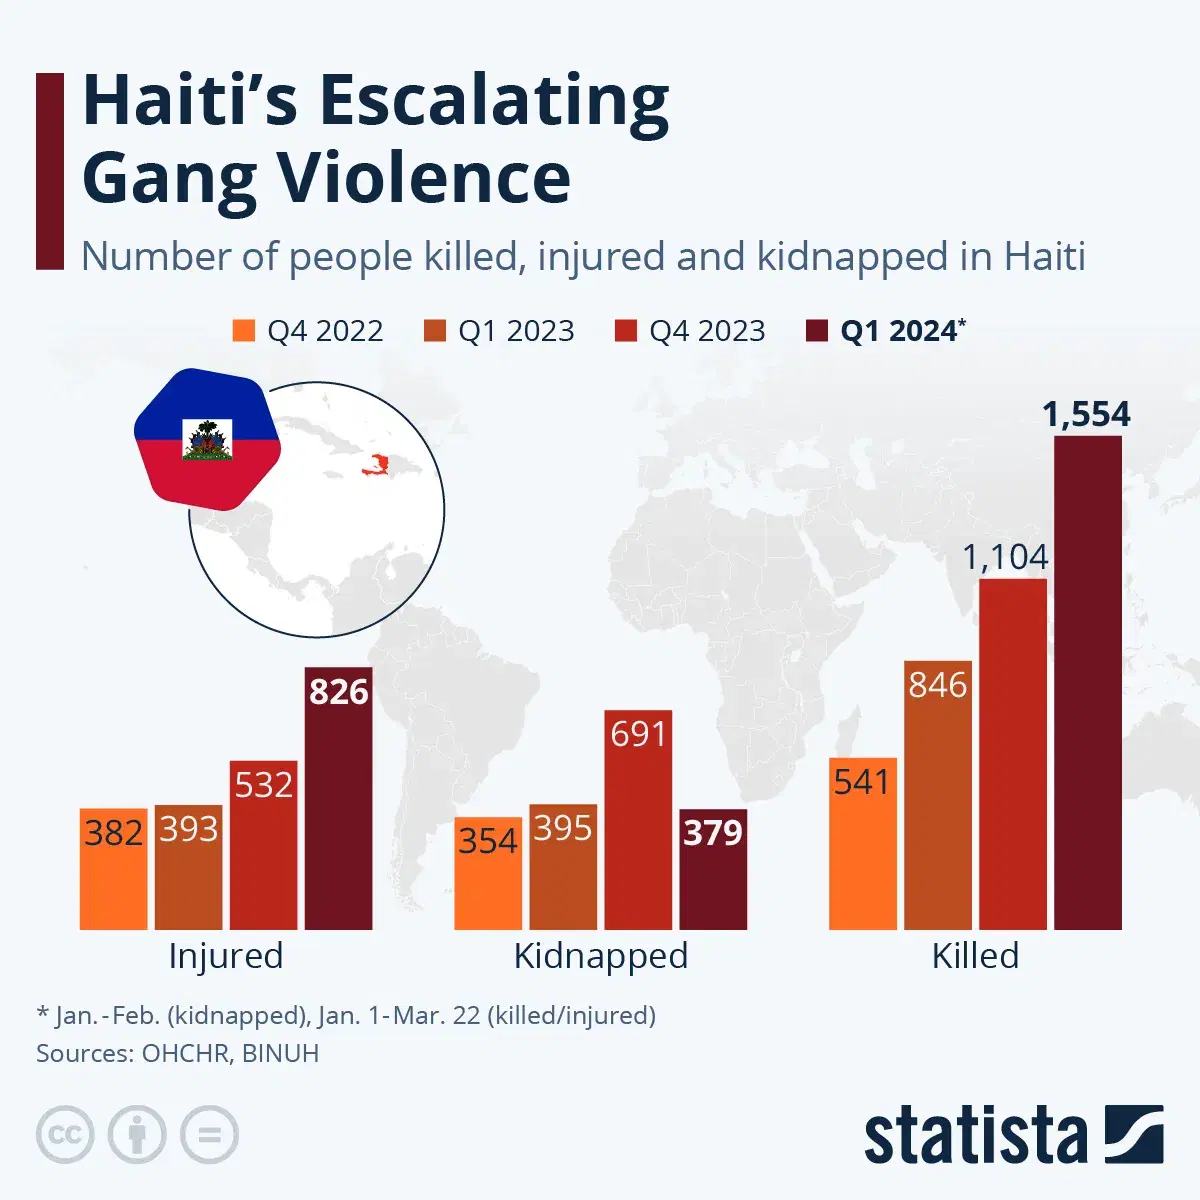 Haiti’s Escalating Gang Violence